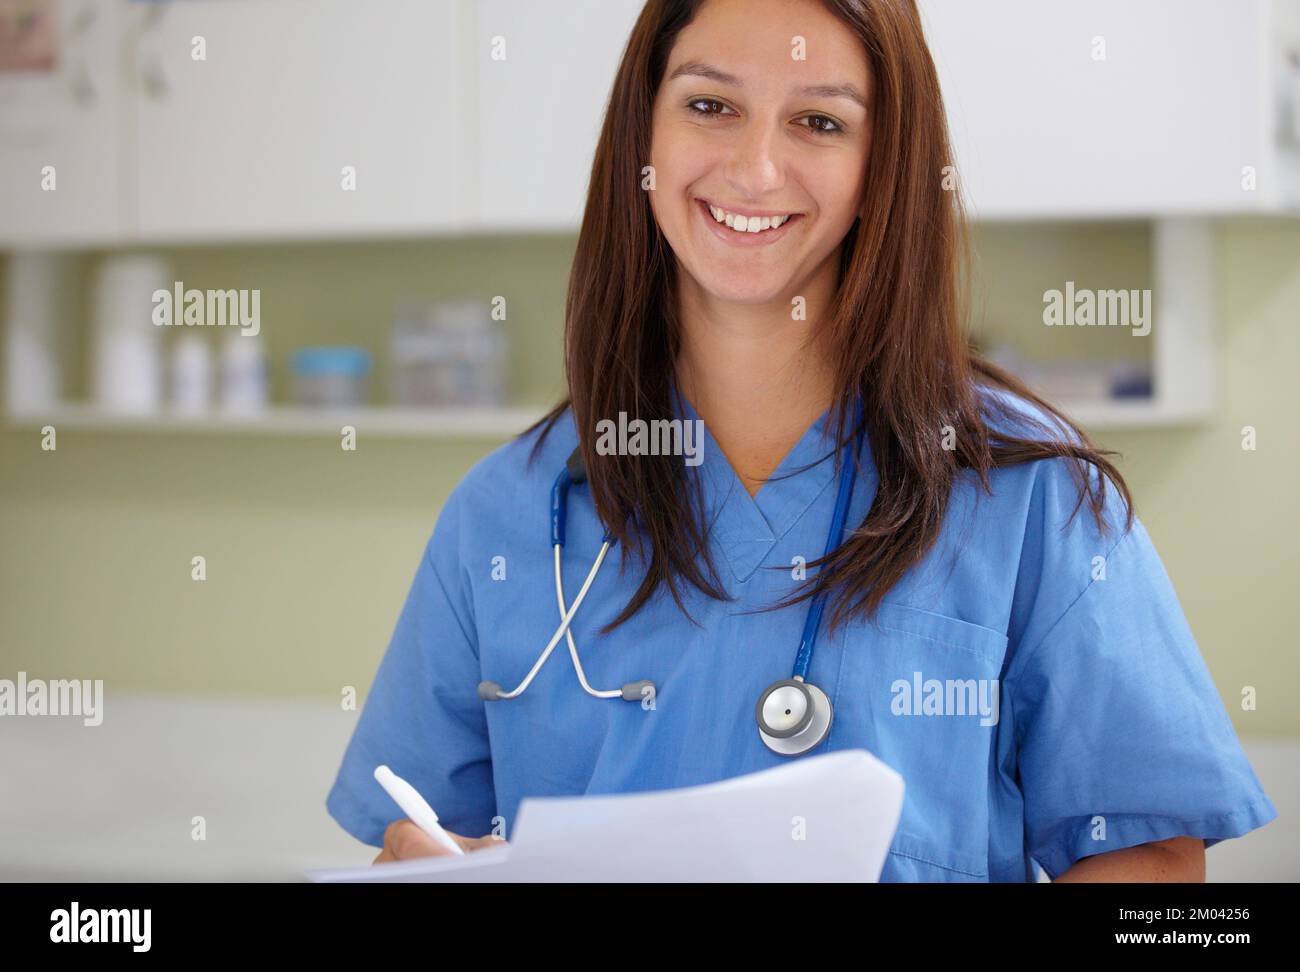 Medizin ist mein Leben. Eine entspannte Frau in Kittel, die Dokumente hält und die Kamera anlächelt. Stockfoto